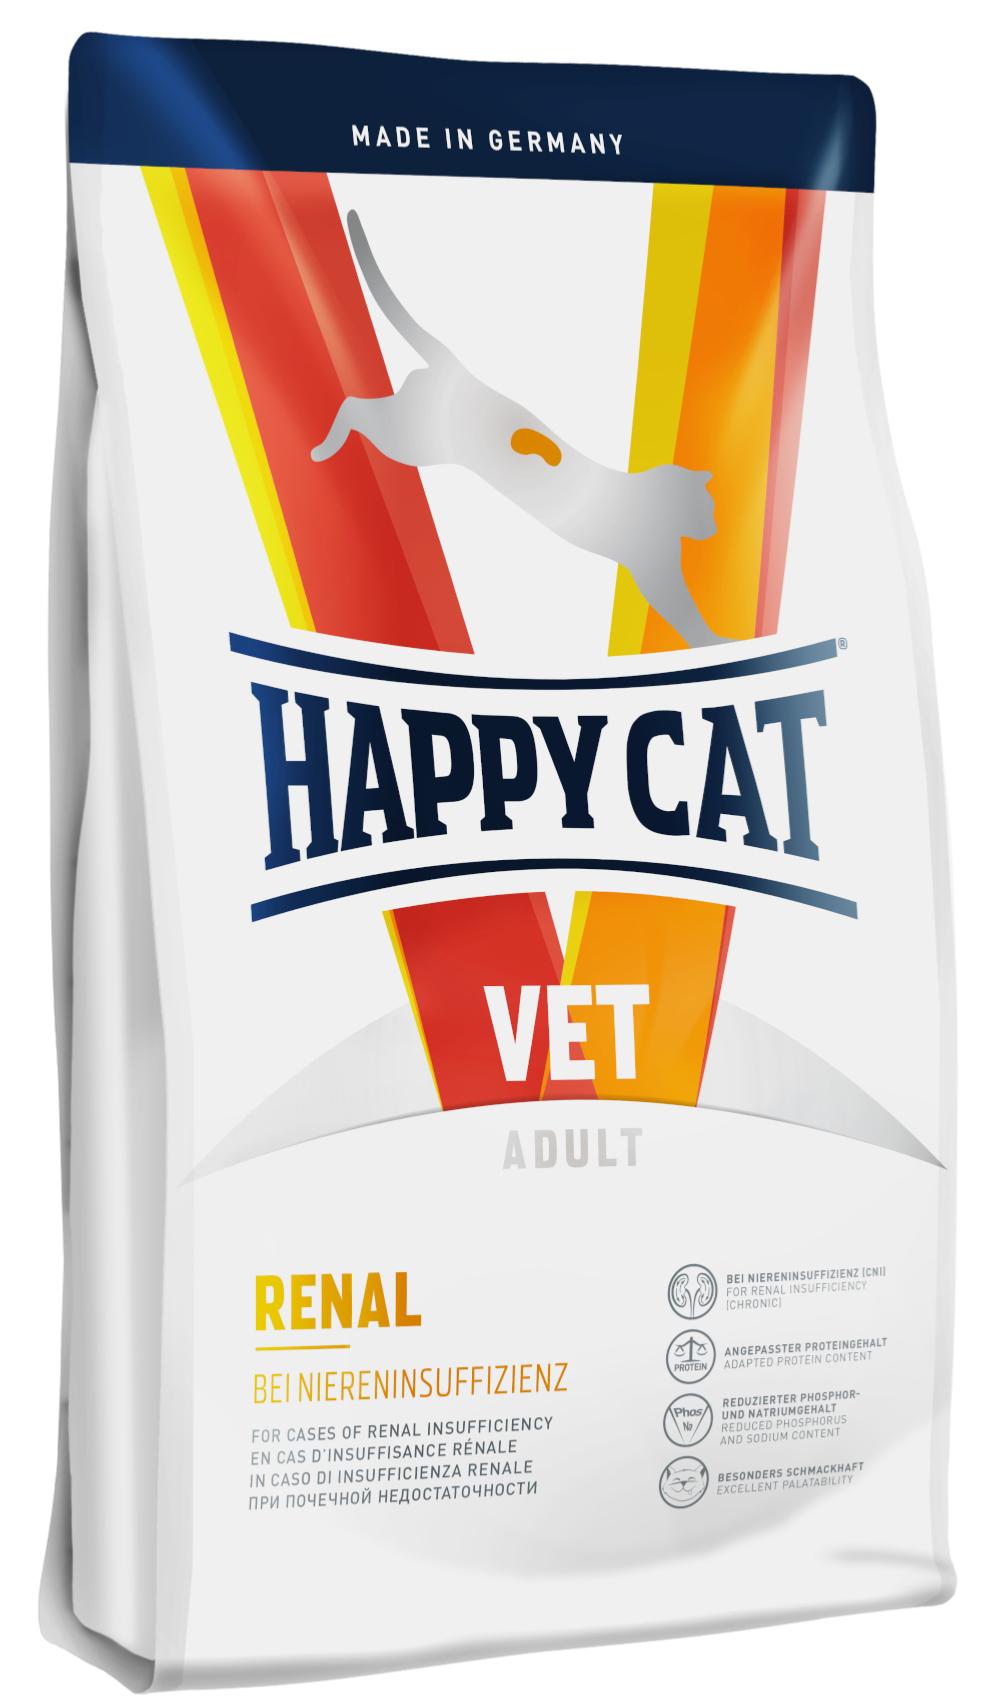 Happy Cat VET Renal